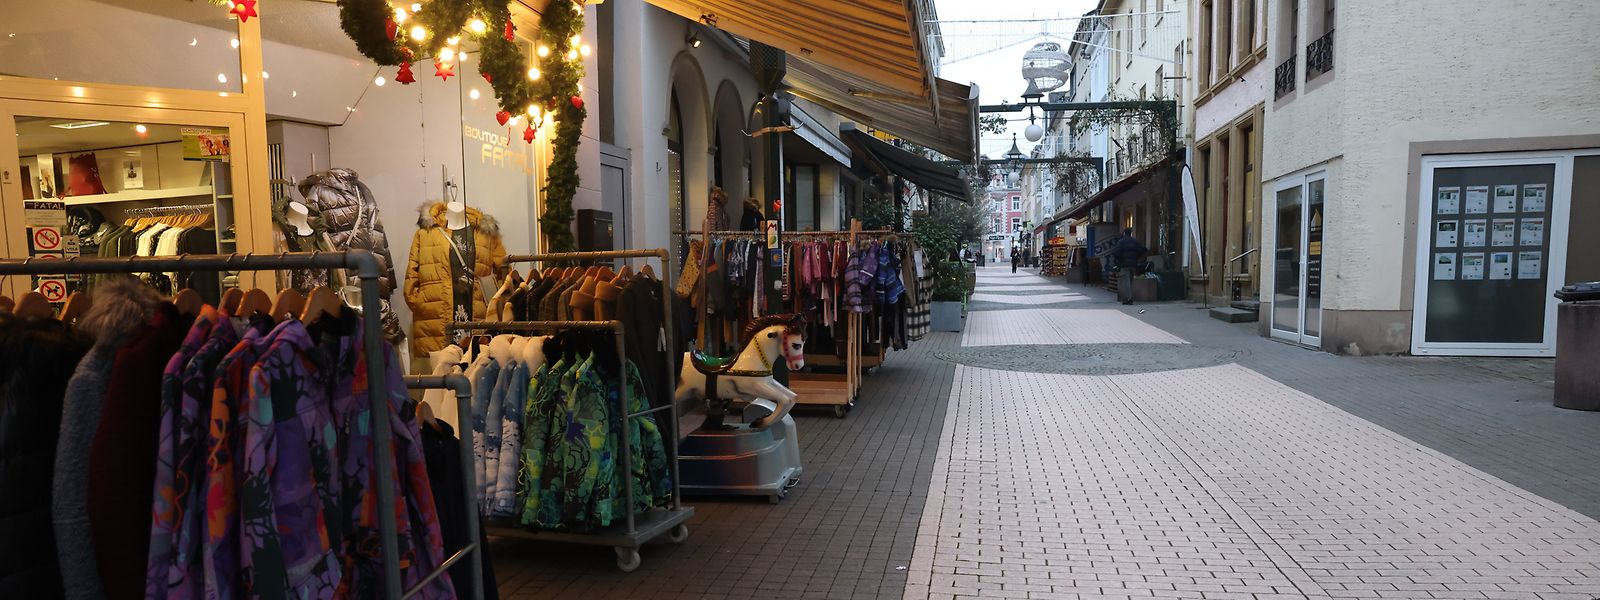 Am Nikolaustag ist die Rue de la Gare zum größten Teil menschenleer. Doch auch an den anderen Tagen herrscht immer weniger Betrieb, wie Einzelhändler zugeben. 